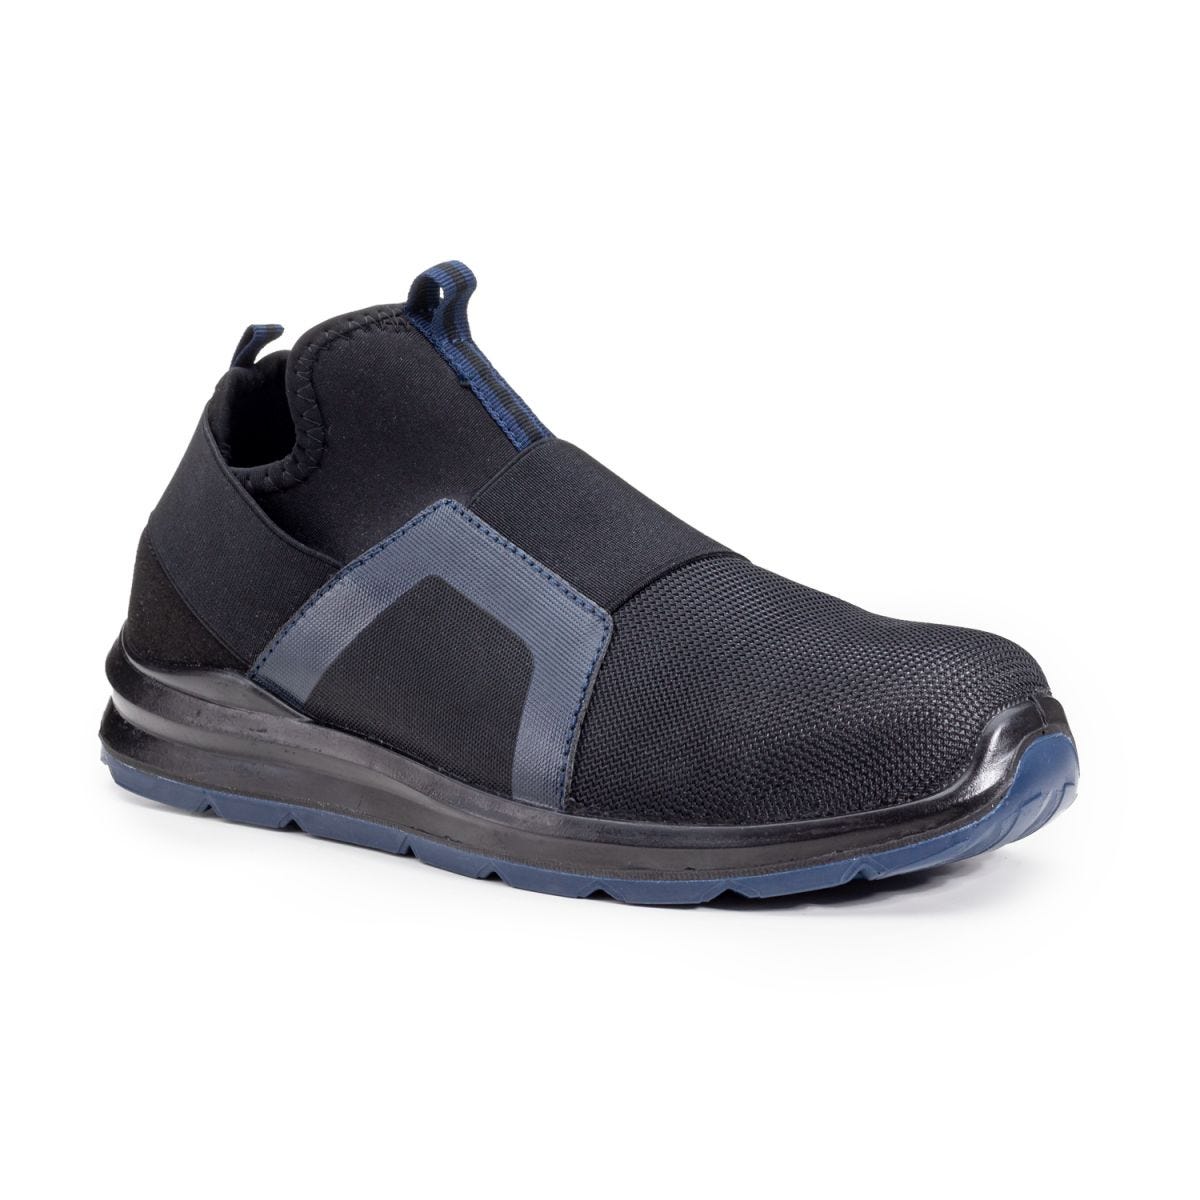 Chaussures de sécurité S1P PARAIBA Basse Noir Bleu - COVERGUARD - Taille 42 0